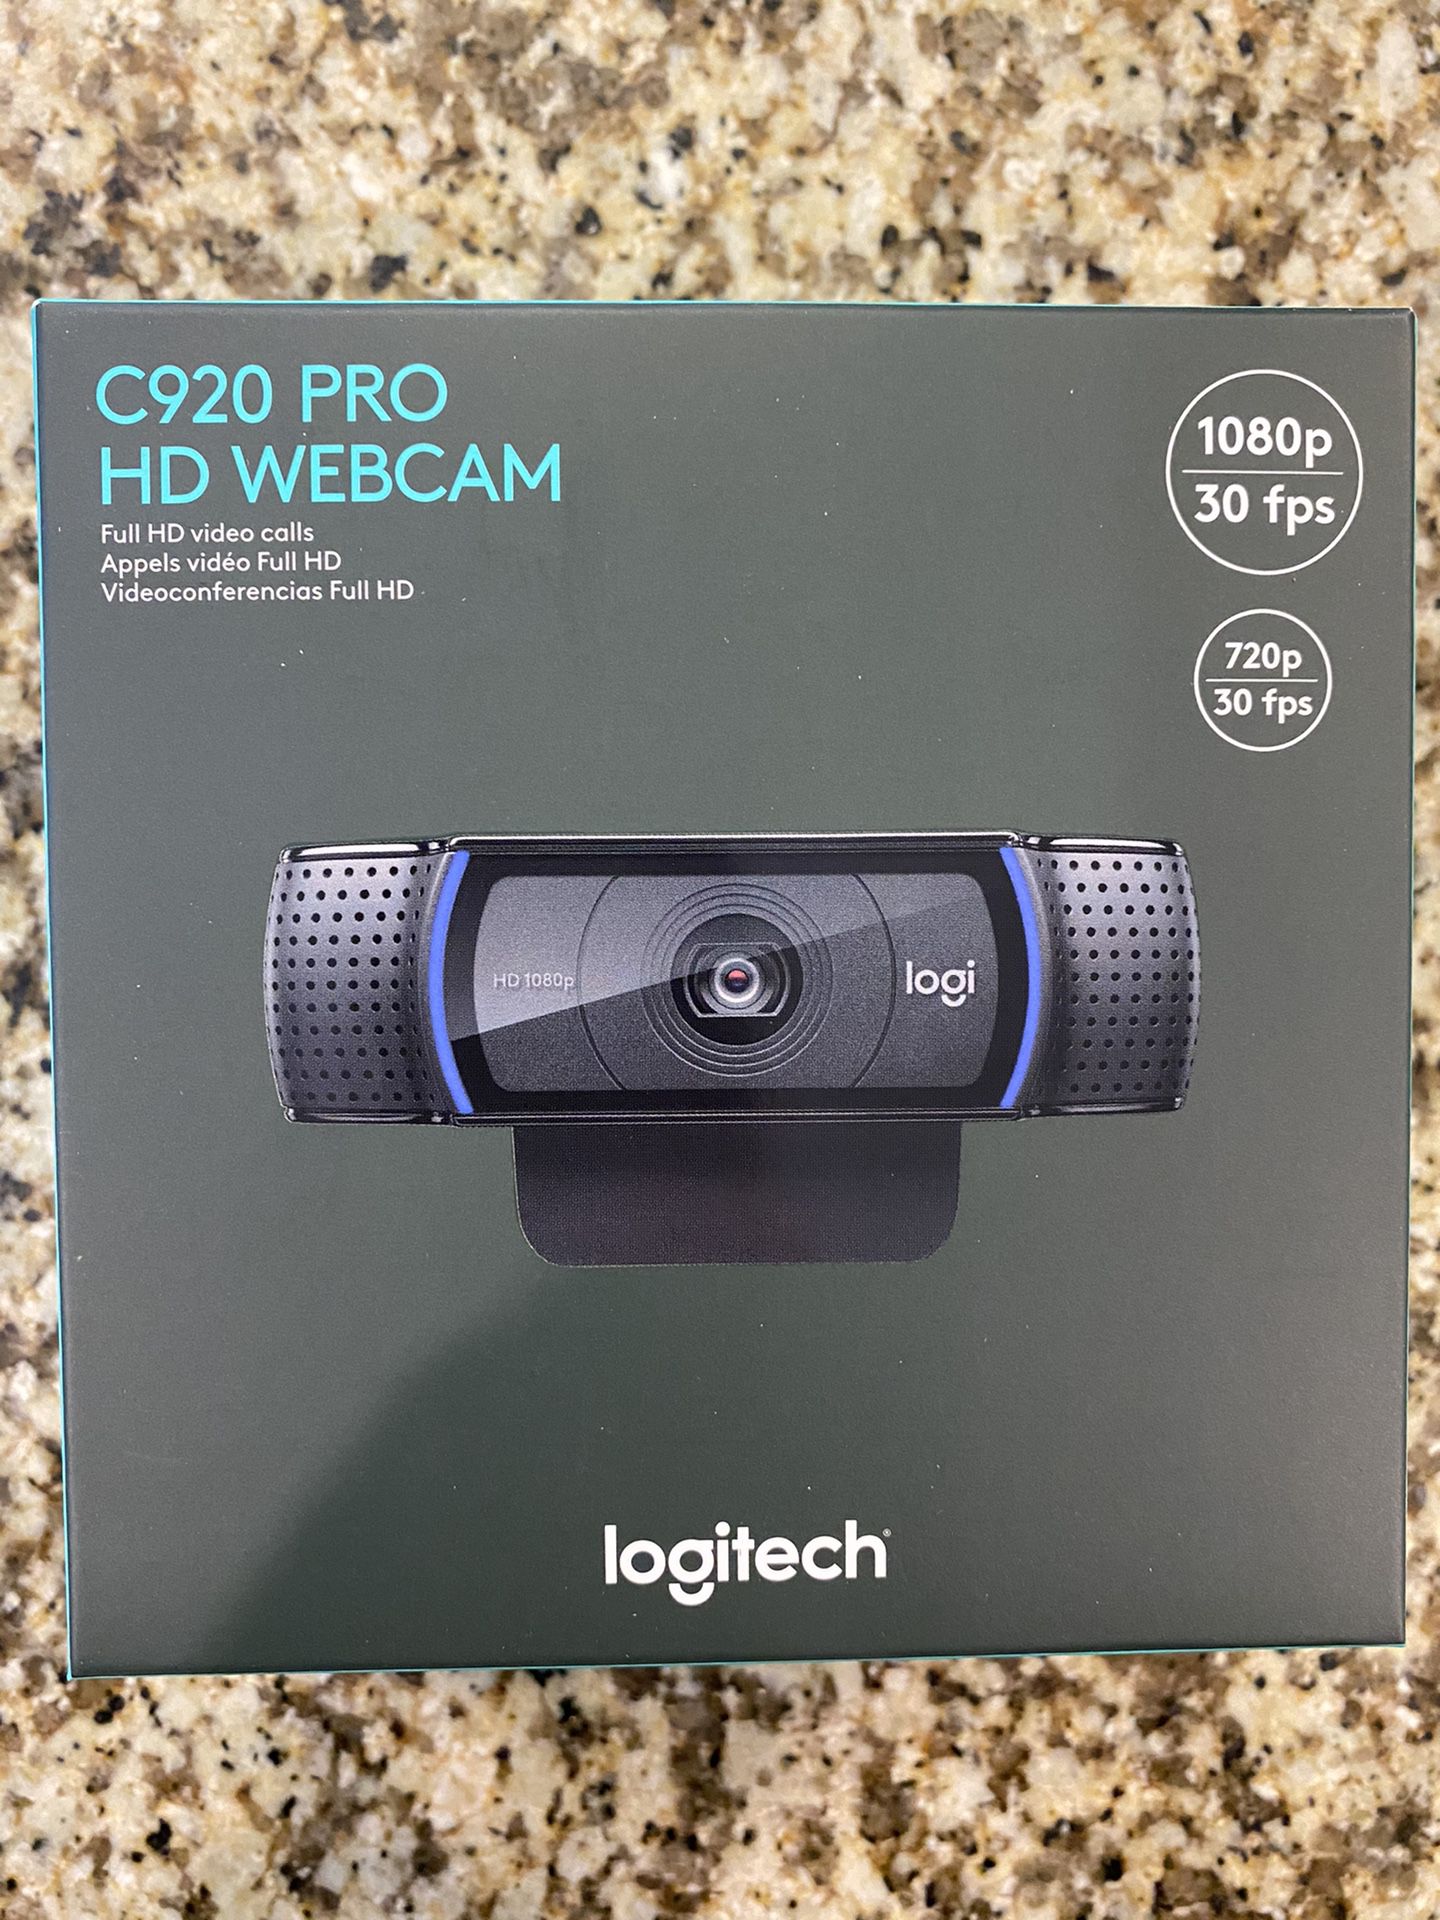 Logitech C920 Pro HD Webcam - new in sealed box